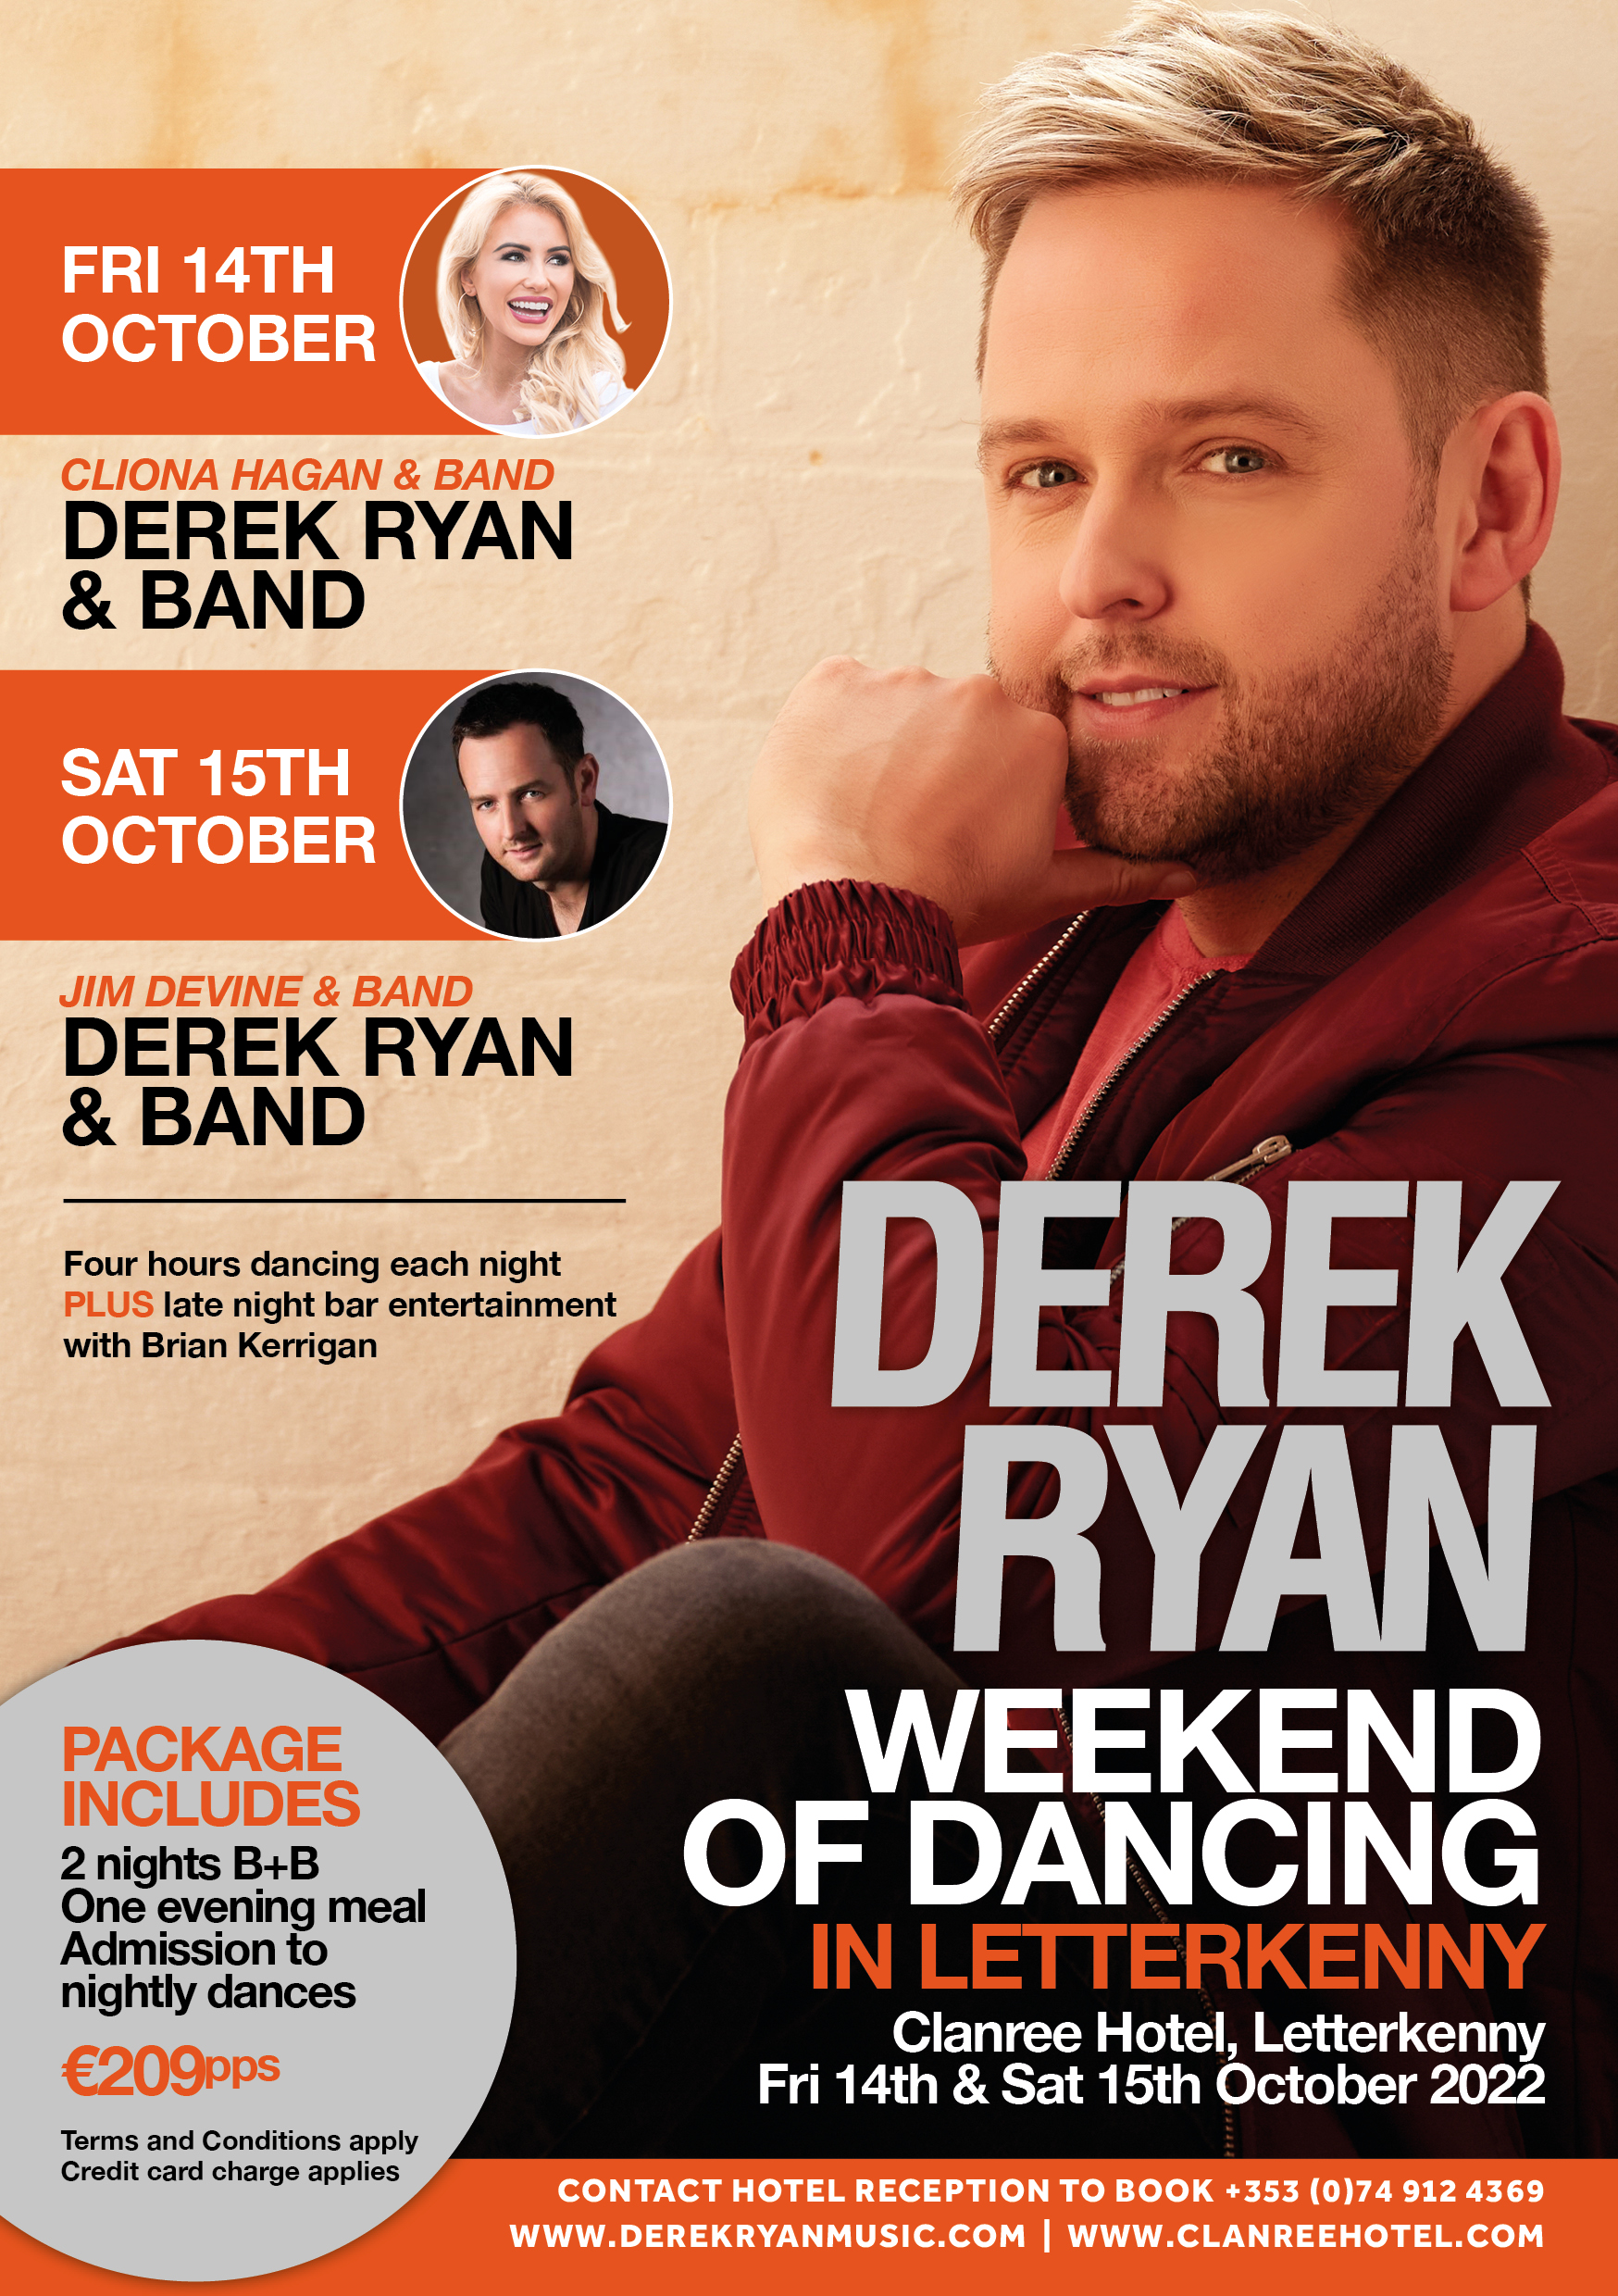 Derek Ryan Weekend of Dancing in Letterkenny [Fri 14th & Sat 15th Oct 2022]